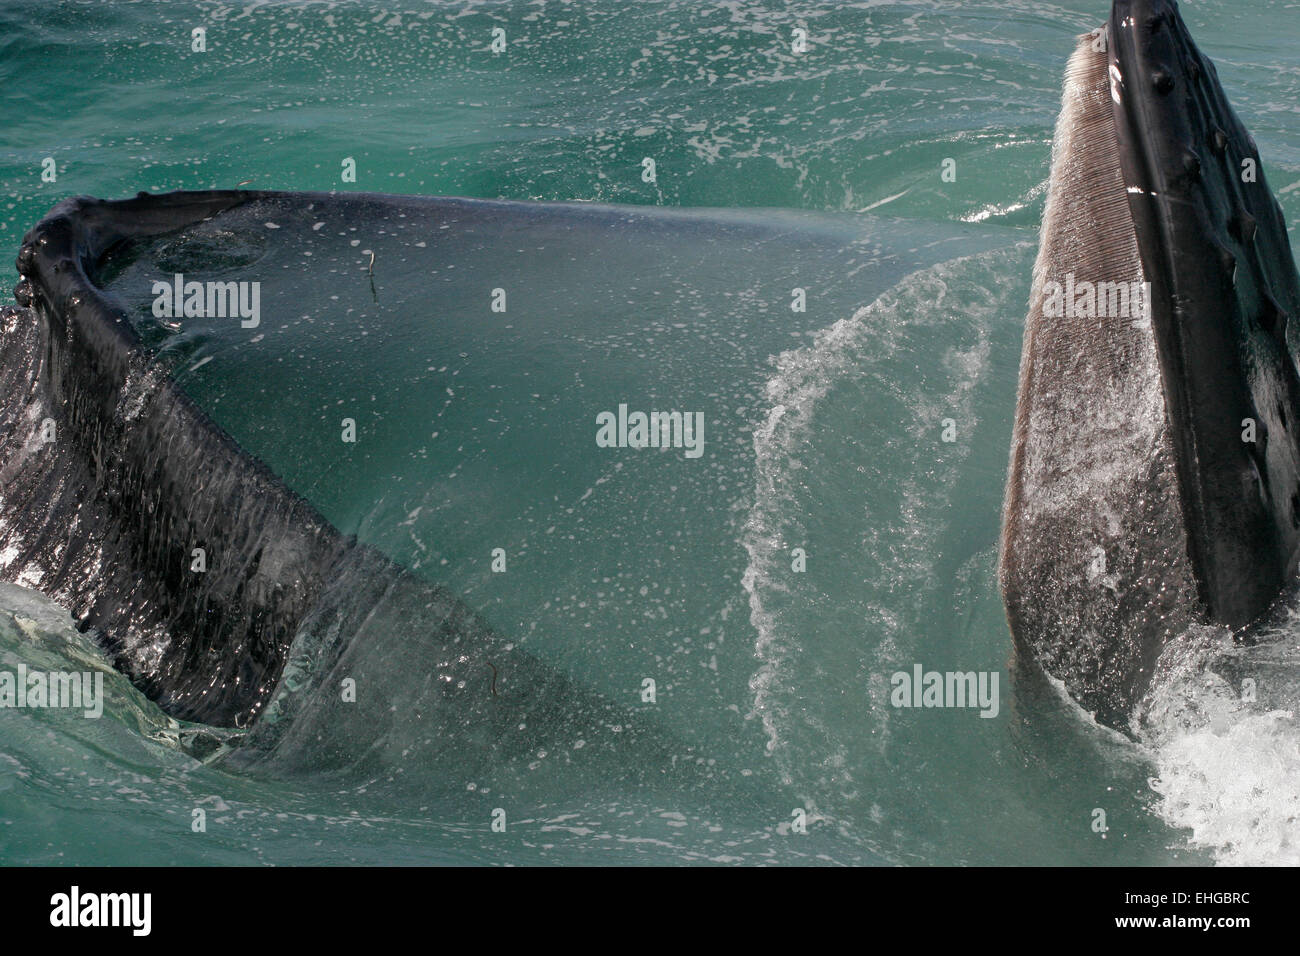 Una ballena jorobada superficies del Atlántico Norte con la boca abierta mientras se alimentan, closeup Foto de stock